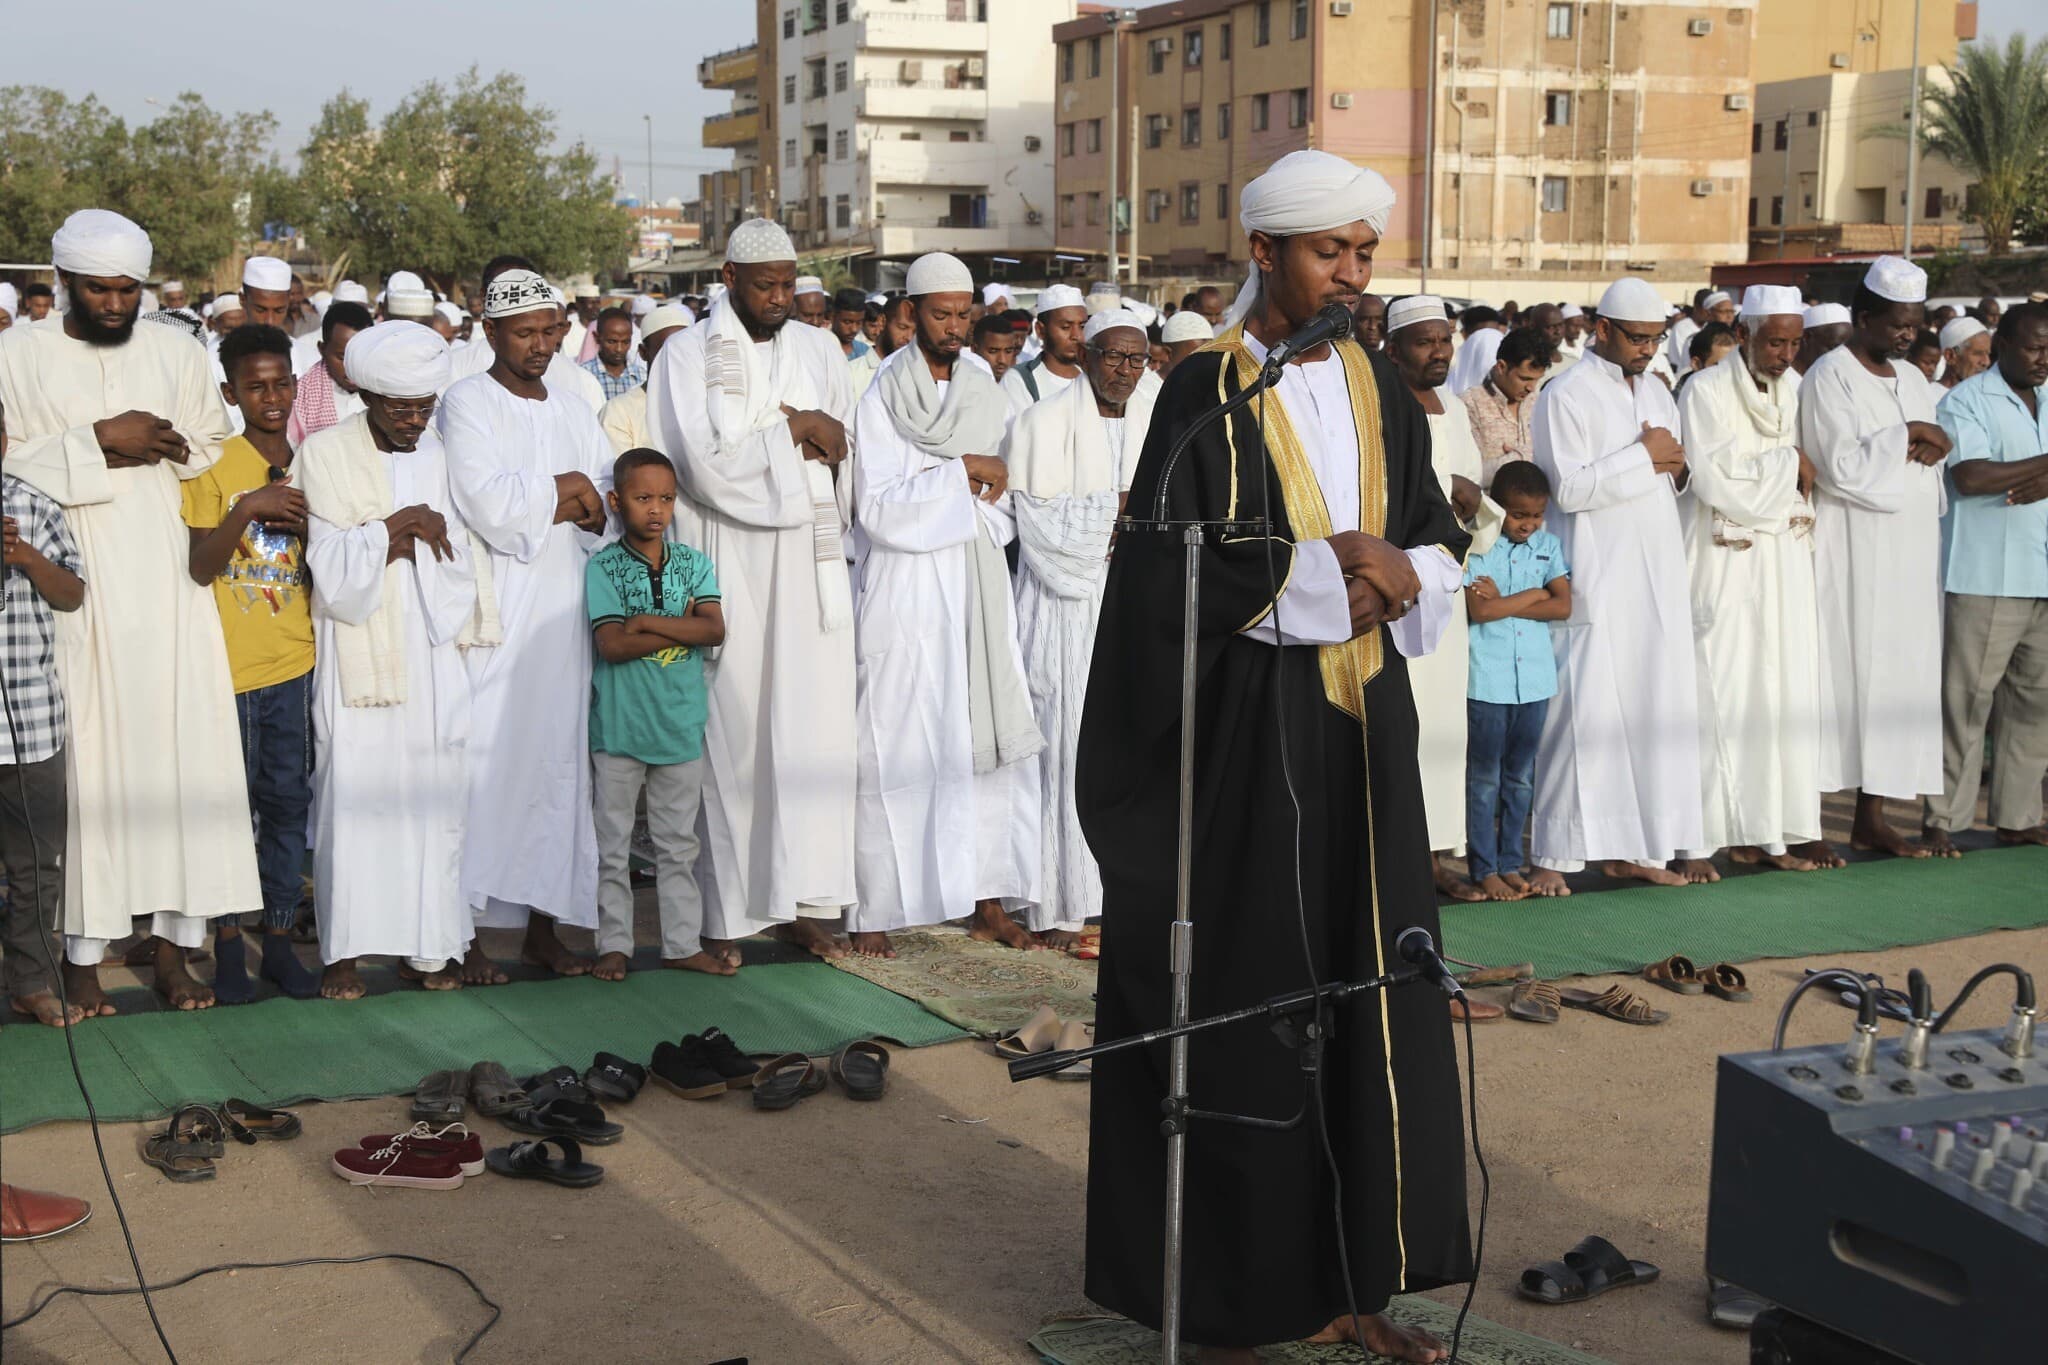 אילוסטרציה, תפילה המונית בשטח פתוח בסודאן, בעקבות הנחיות הקורונה, מאי 2020 (צילום: AP Photo/Marwan Ali)